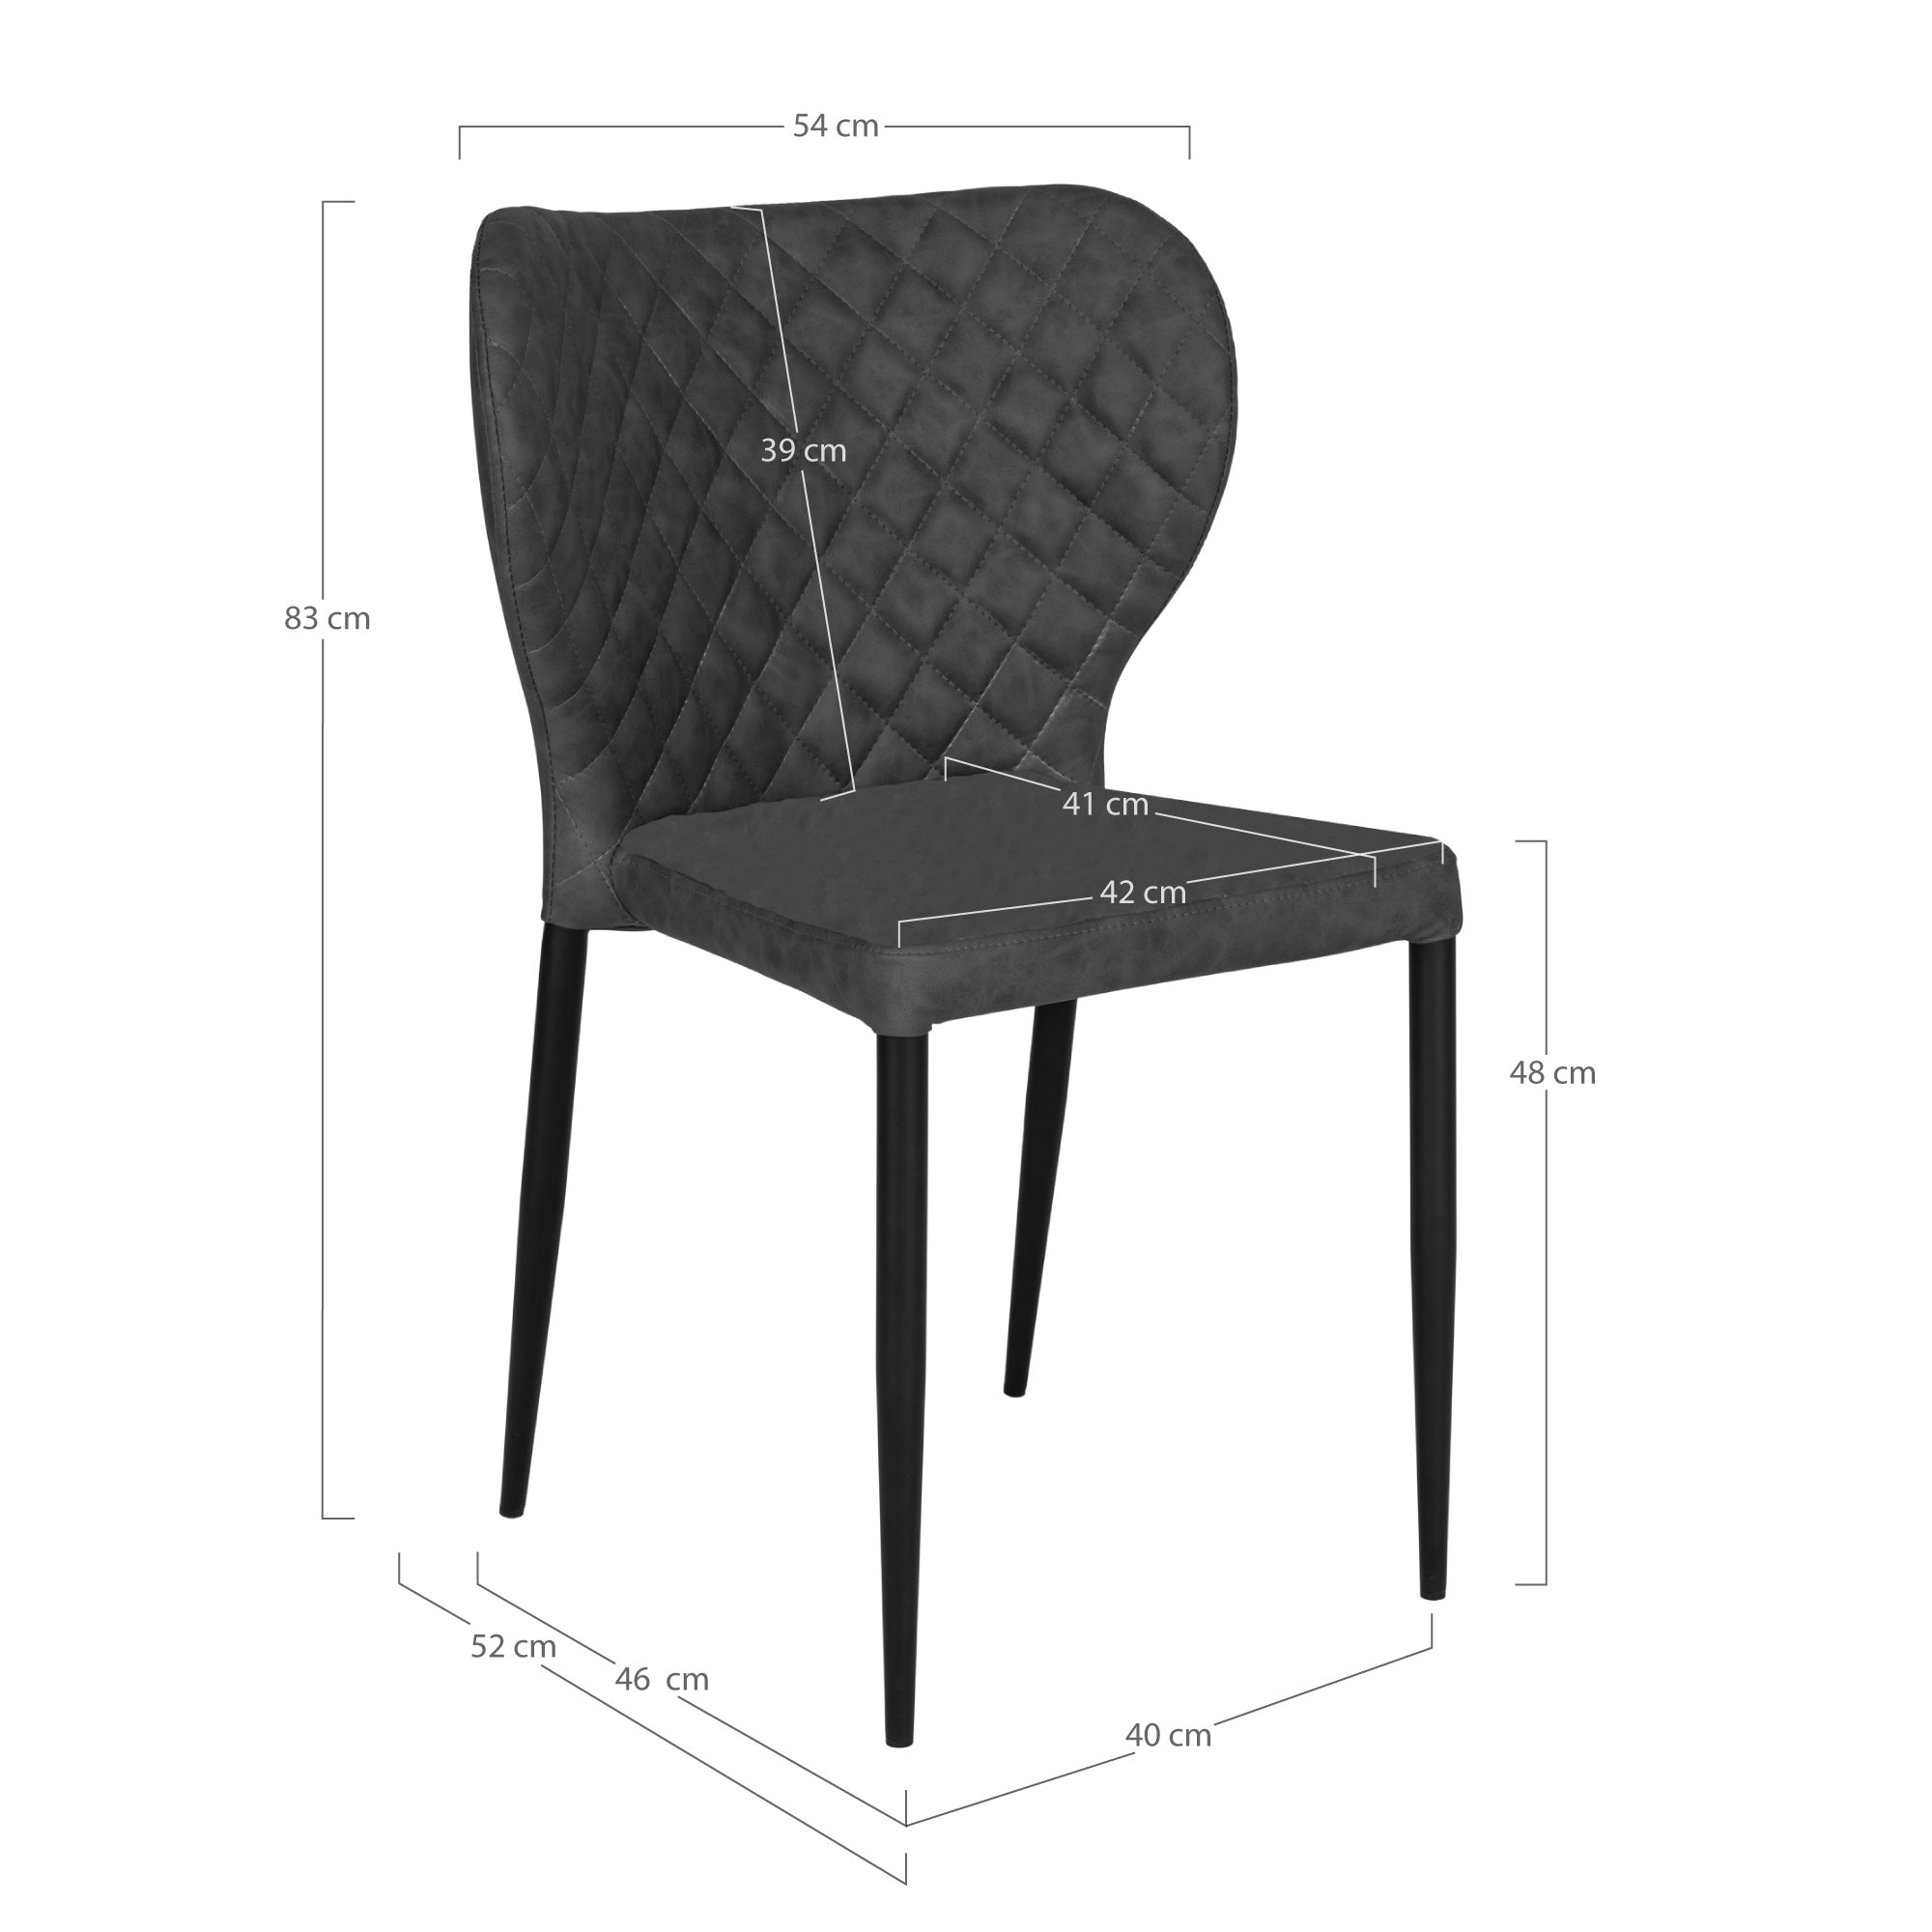 Pisa Spisebordsstol - Spisebordsstol I Pu, Mørkegrå Med Sorte Ben, Hn1221 ⎮ Sæt af 4 stk. ⎮ 5713917018482 ⎮ 1001291 